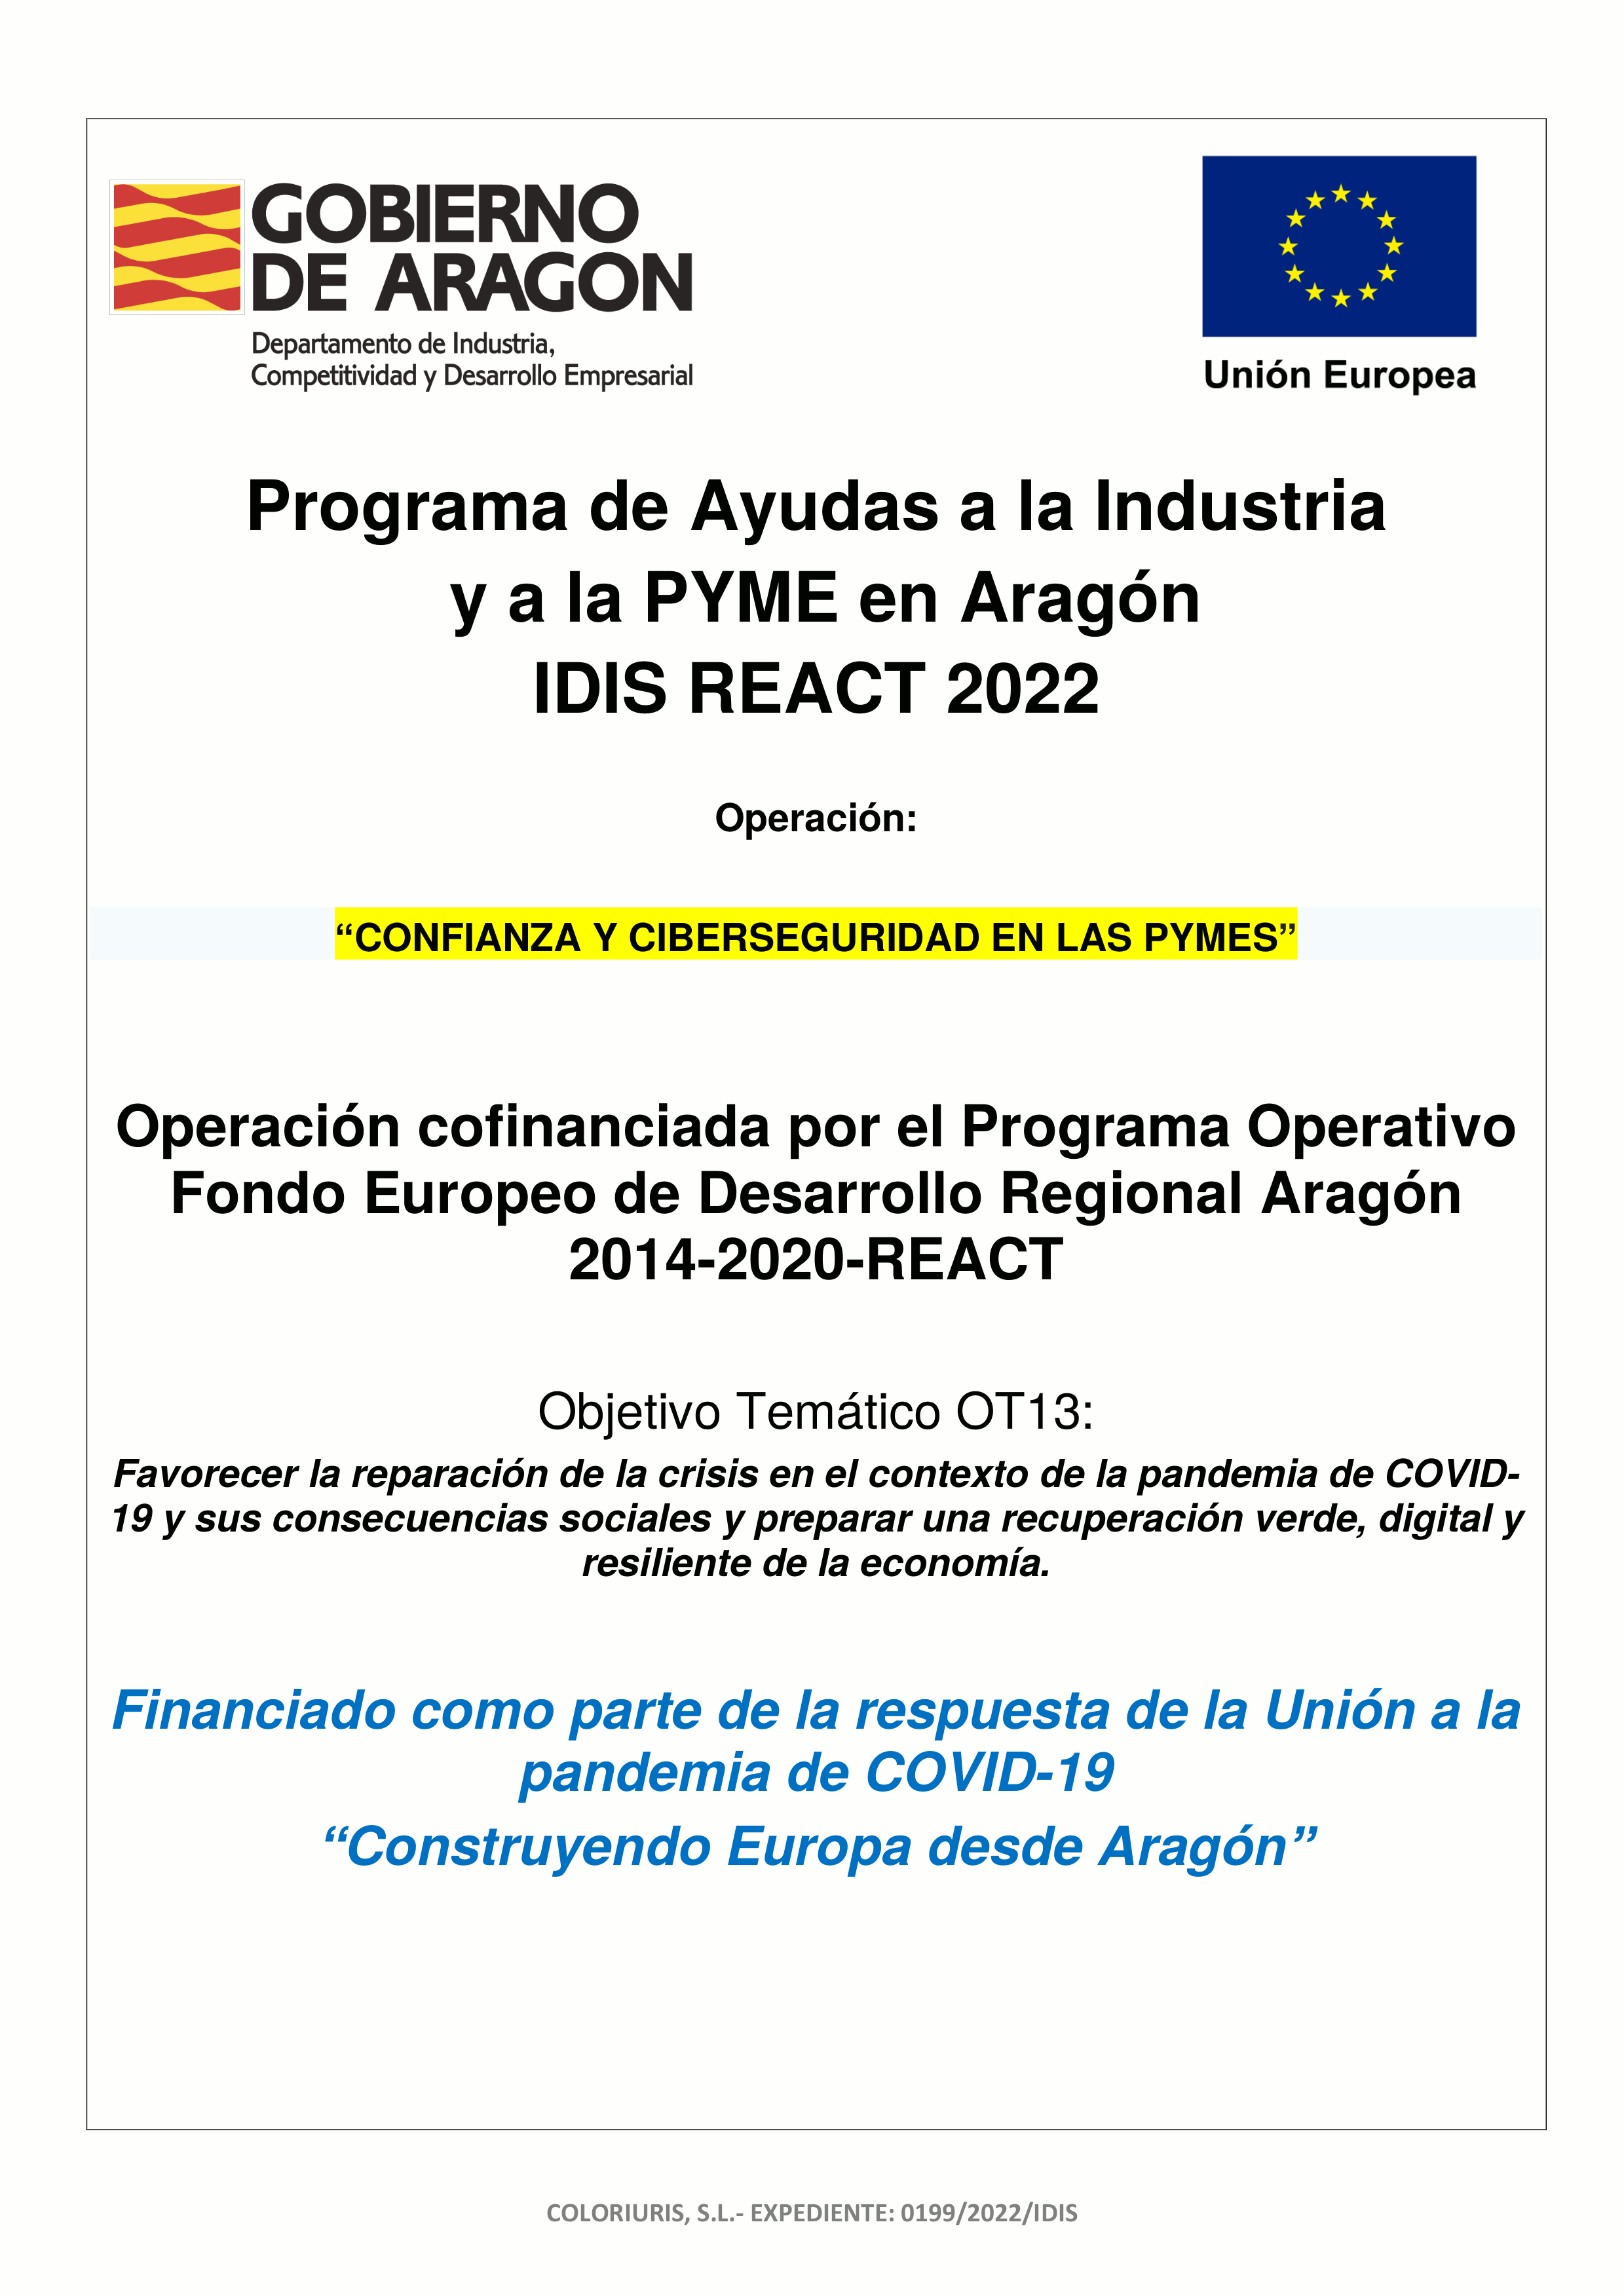 Programa de Ayudas a la Industria y a la PYME en Aragón IDIS REACT 2022